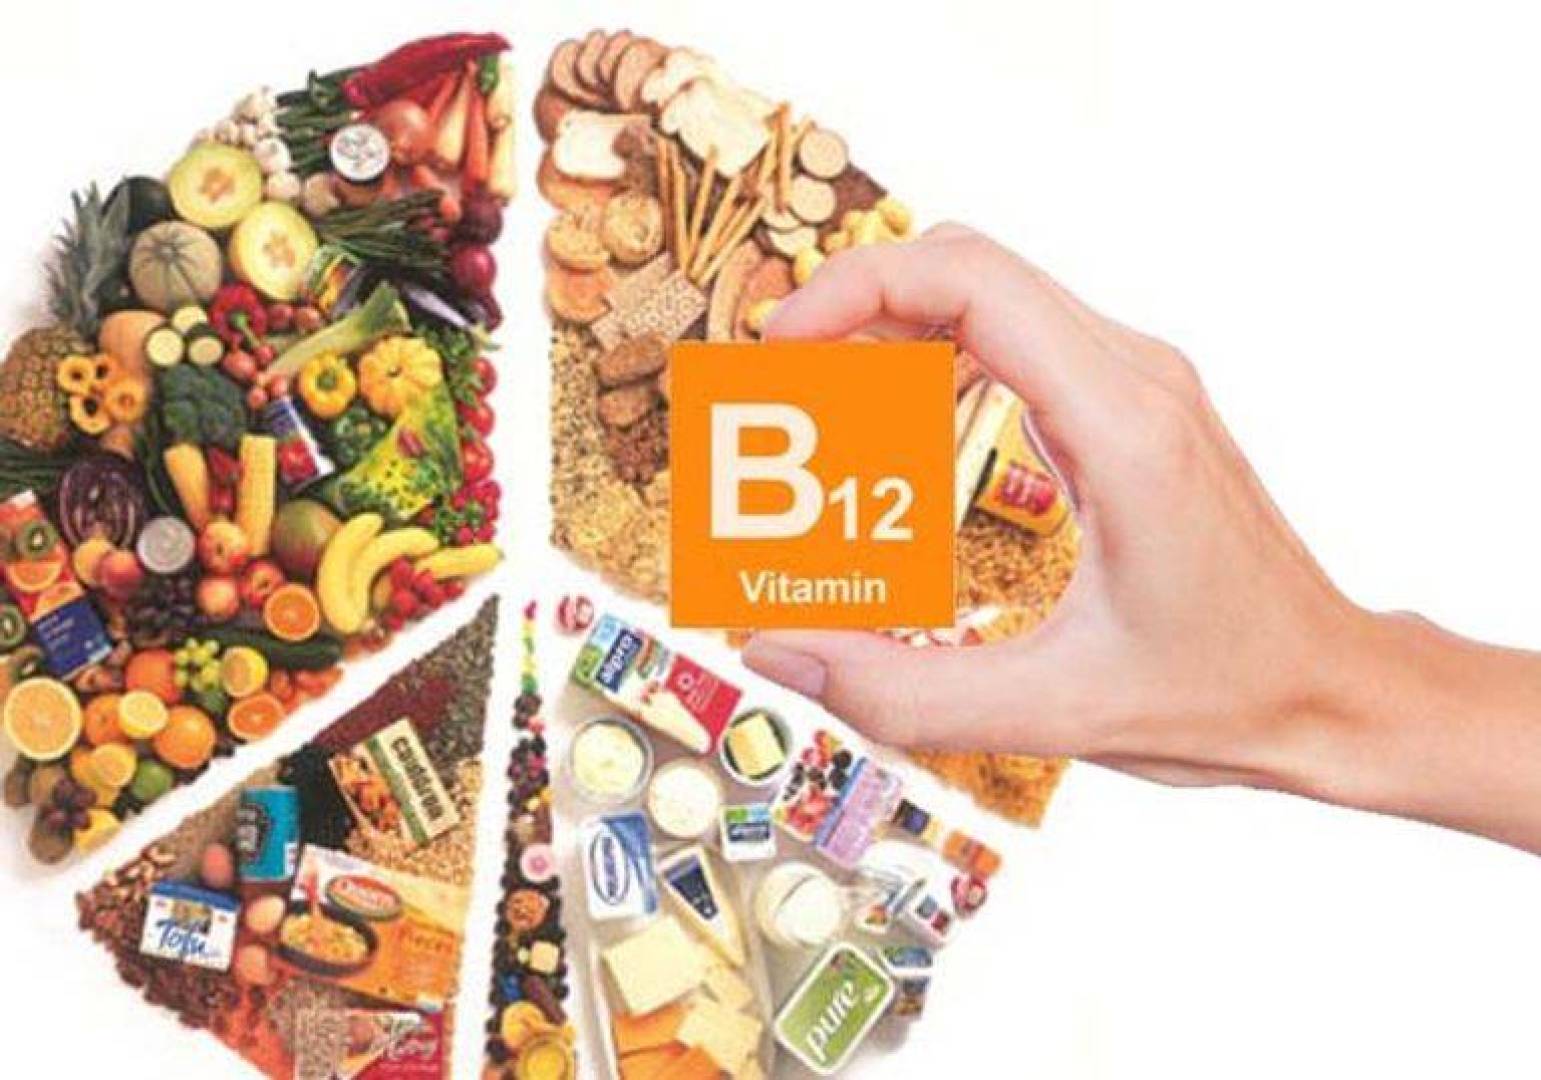 فوائد فيتامين B12 ومصادره الغذائية وعلامات وأعراض نقصه وكيفية التشخيص والعلاج